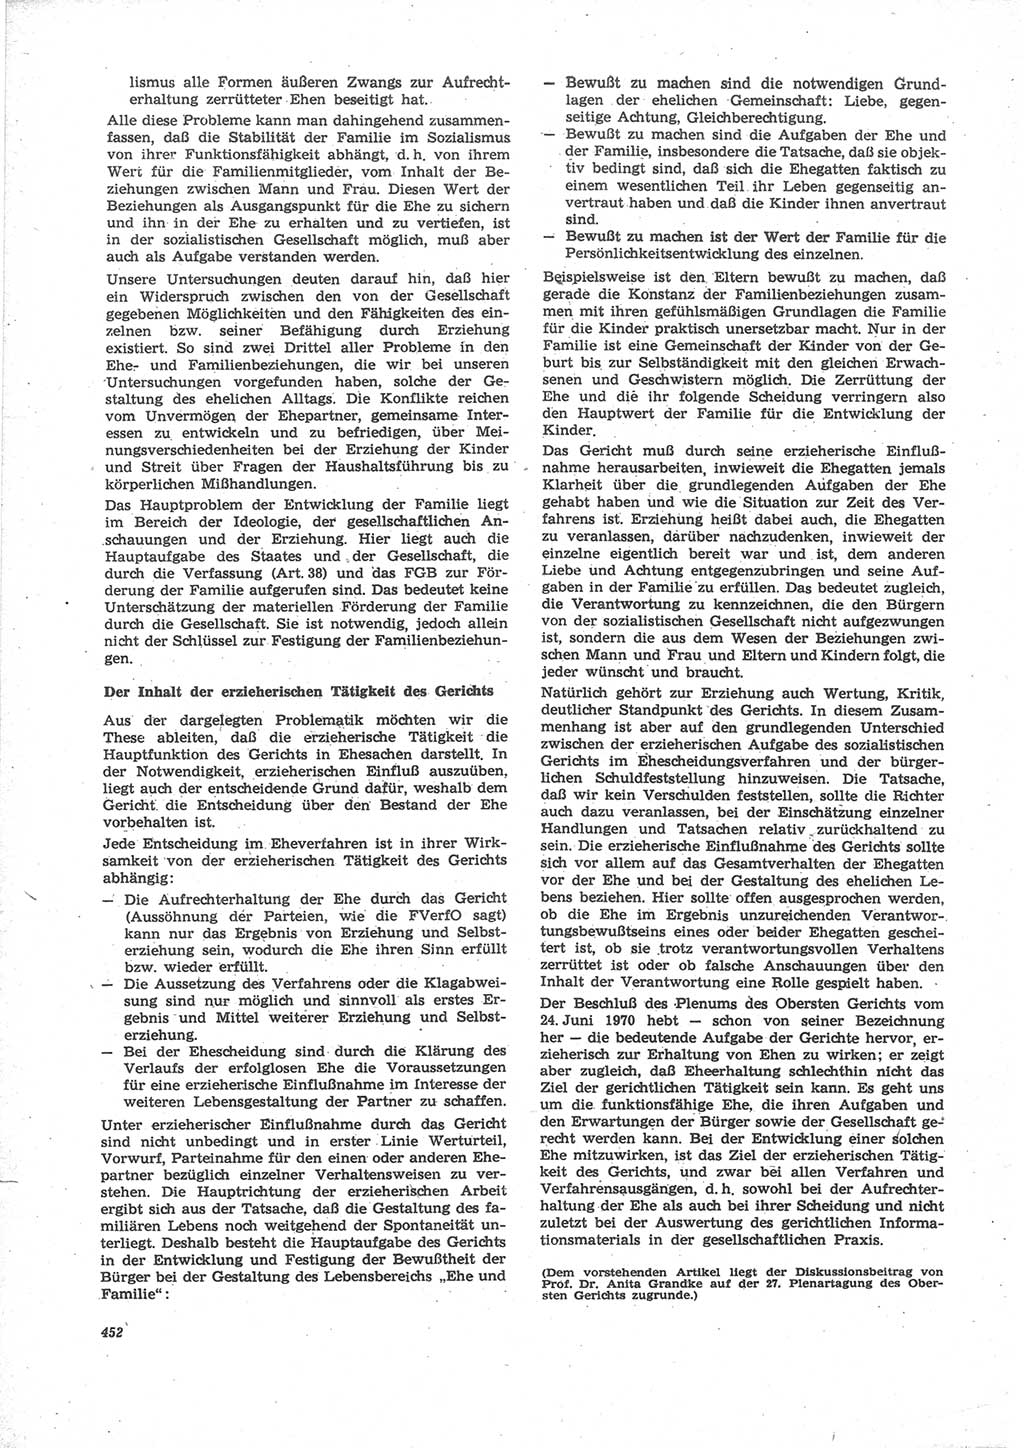 Neue Justiz (NJ), Zeitschrift für Recht und Rechtswissenschaft [Deutsche Demokratische Republik (DDR)], 24. Jahrgang 1970, Seite 452 (NJ DDR 1970, S. 452)